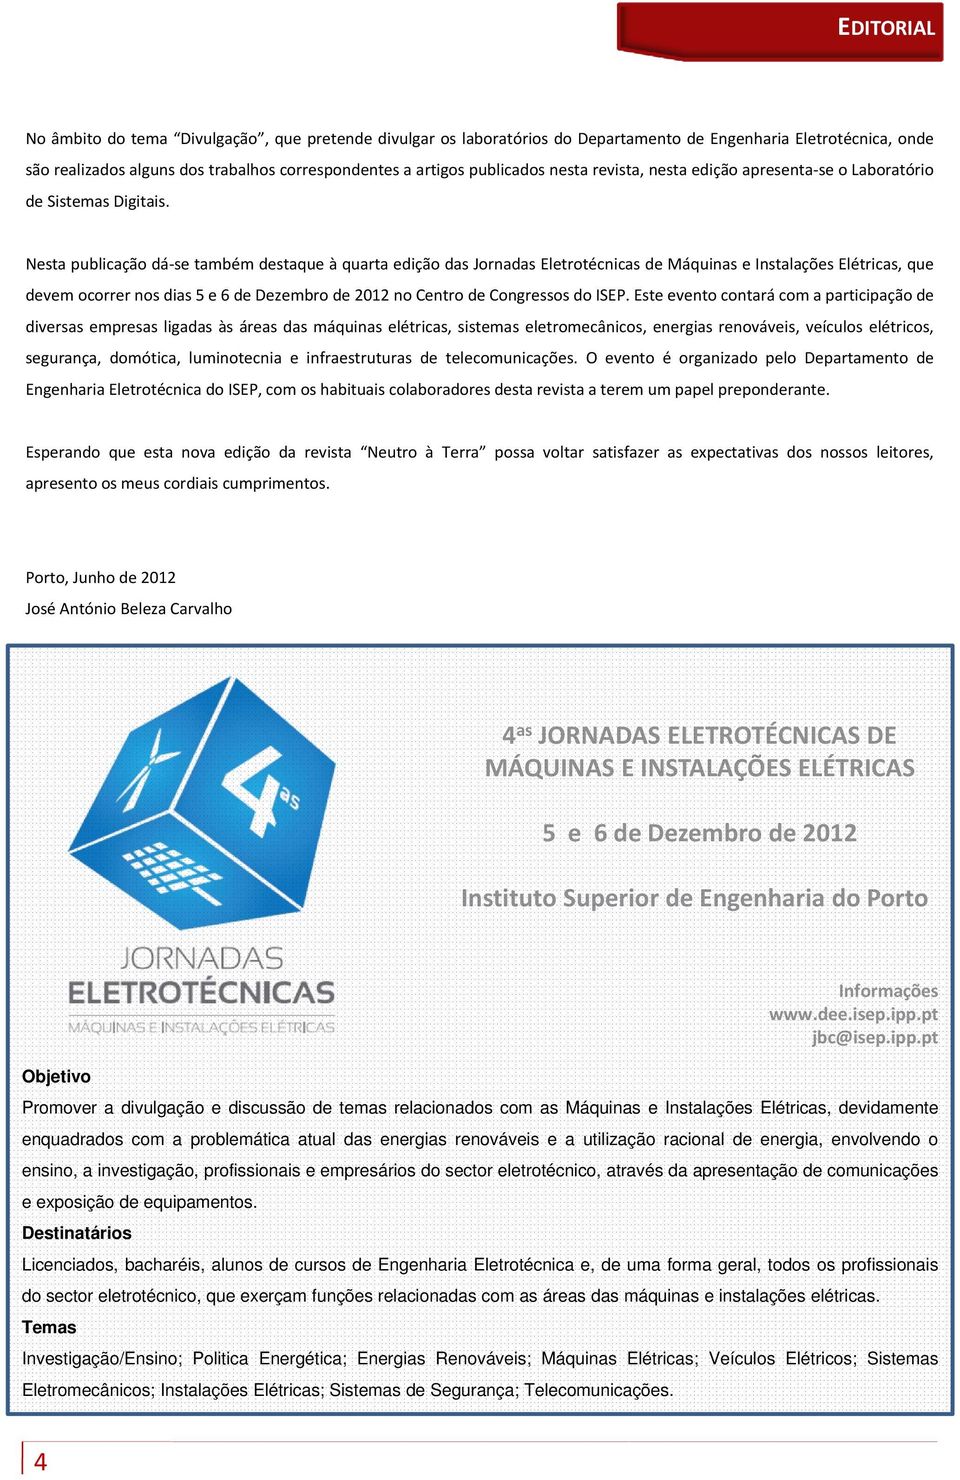 Nesta publicação dá se também destaque à quarta edição das Jornadas Eletrotécnicas de Máquinas e Instalações Elétricas, que devem ocorrer nos dias 5 e 6 de Dezembro de 2012 no Centro de Congressos do